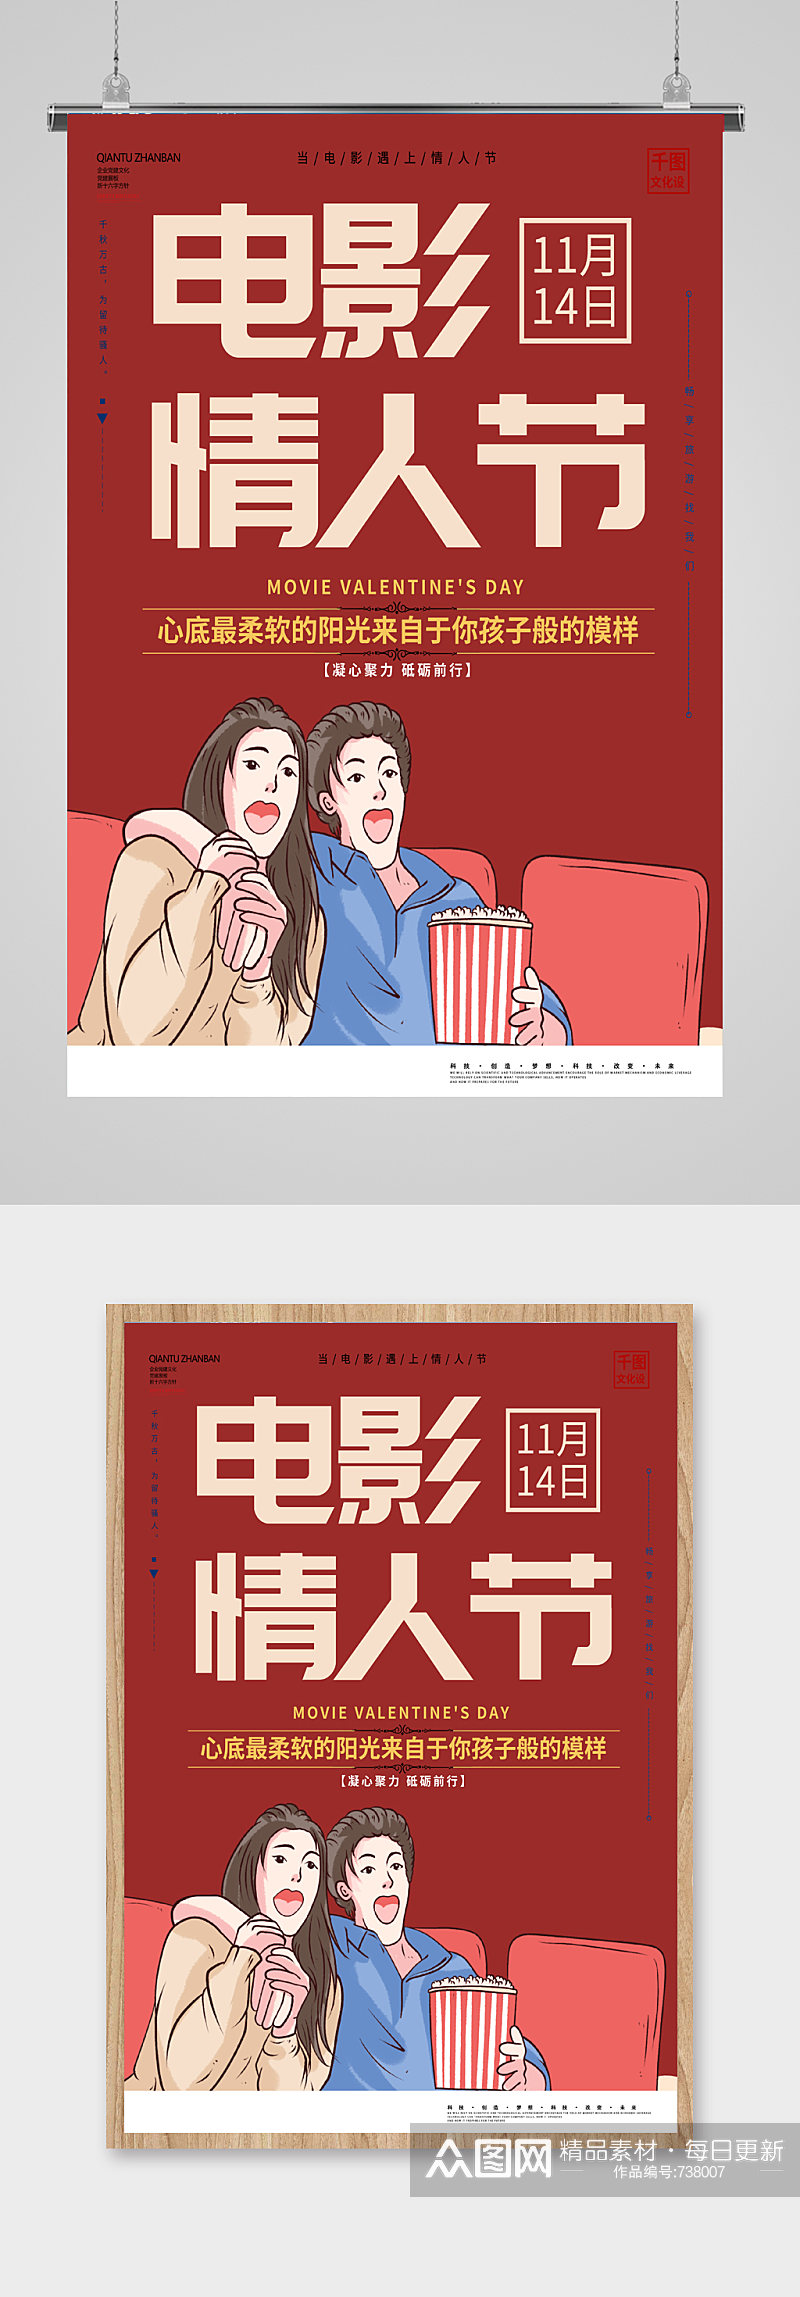 红色简约电影情人节促销宣传海报设计素材